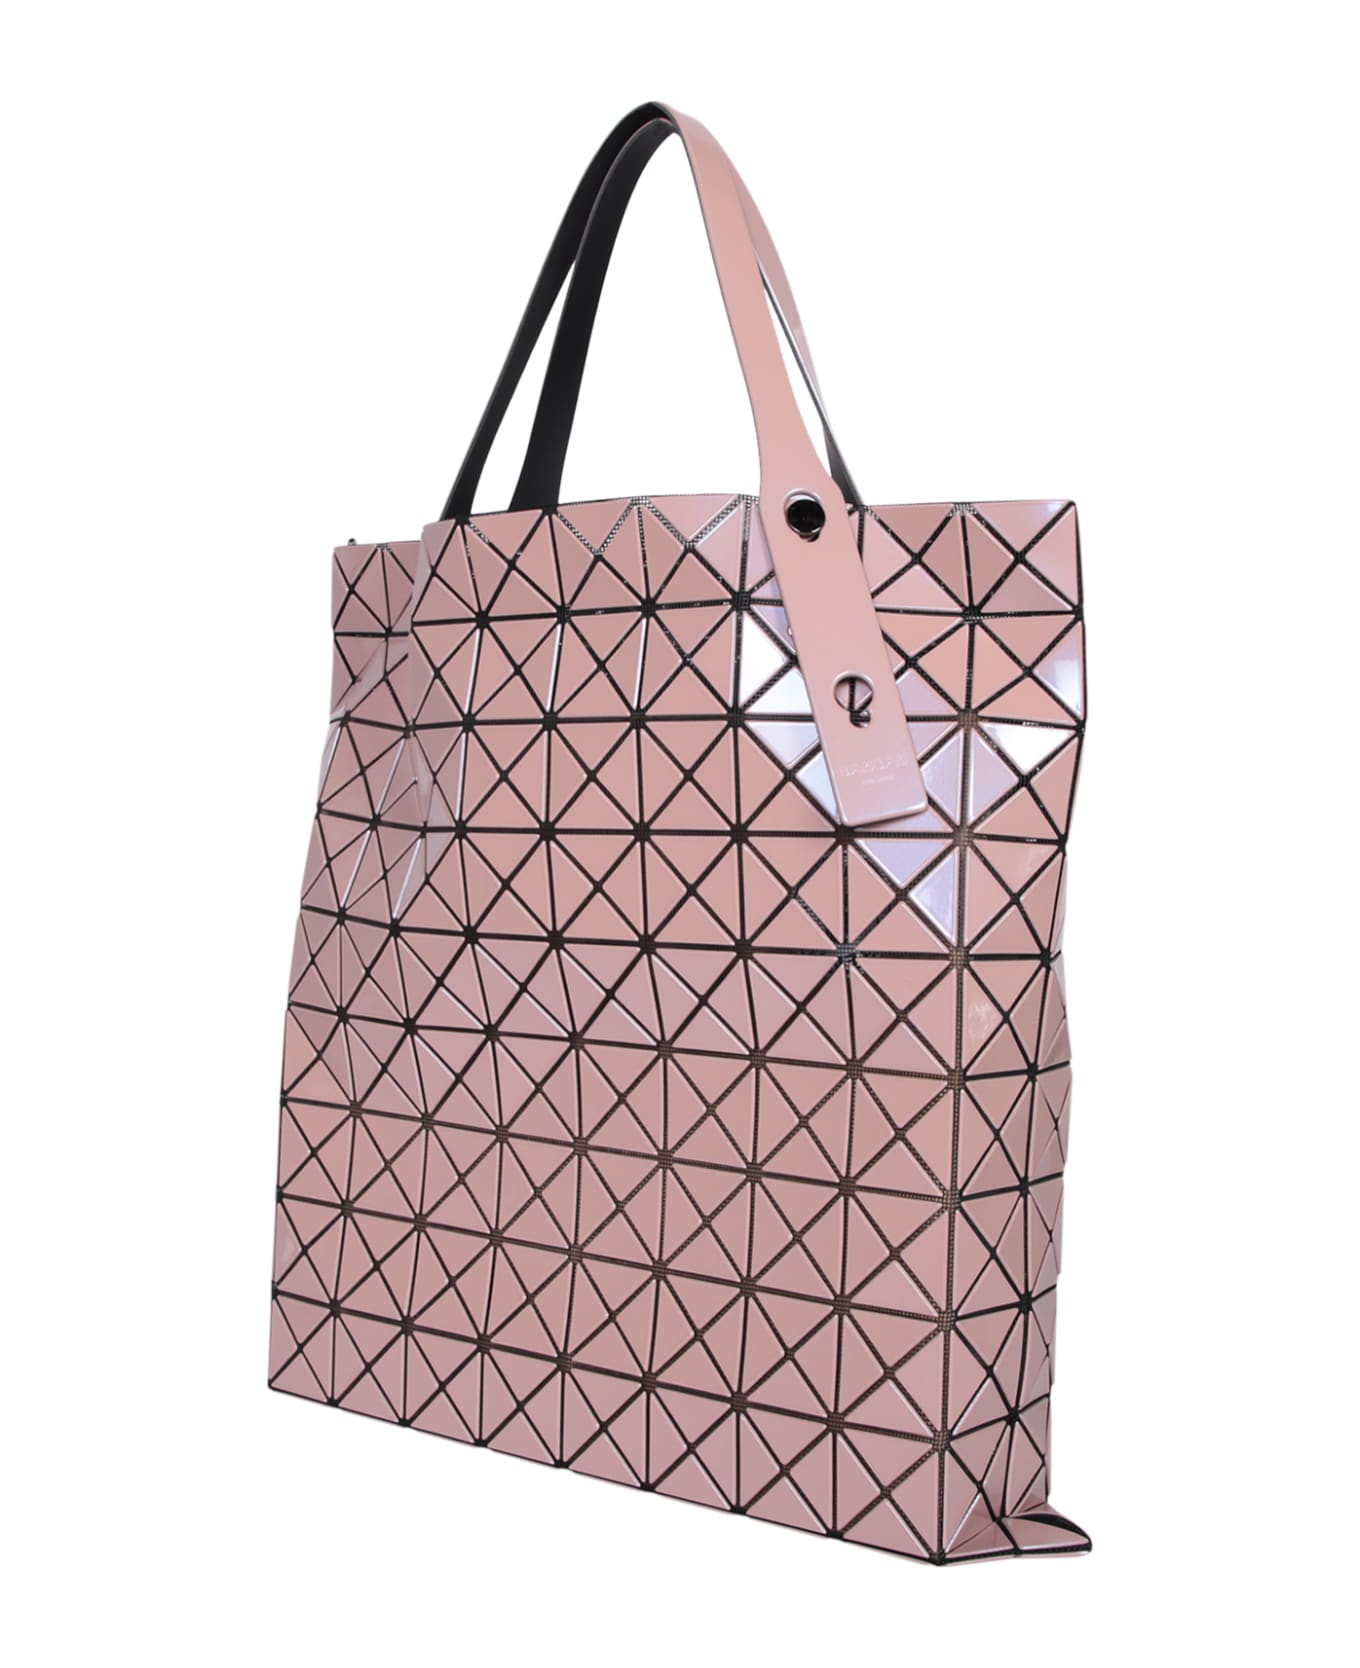 Issey Miyake Prism Metallic Pink Large Bag - Pink